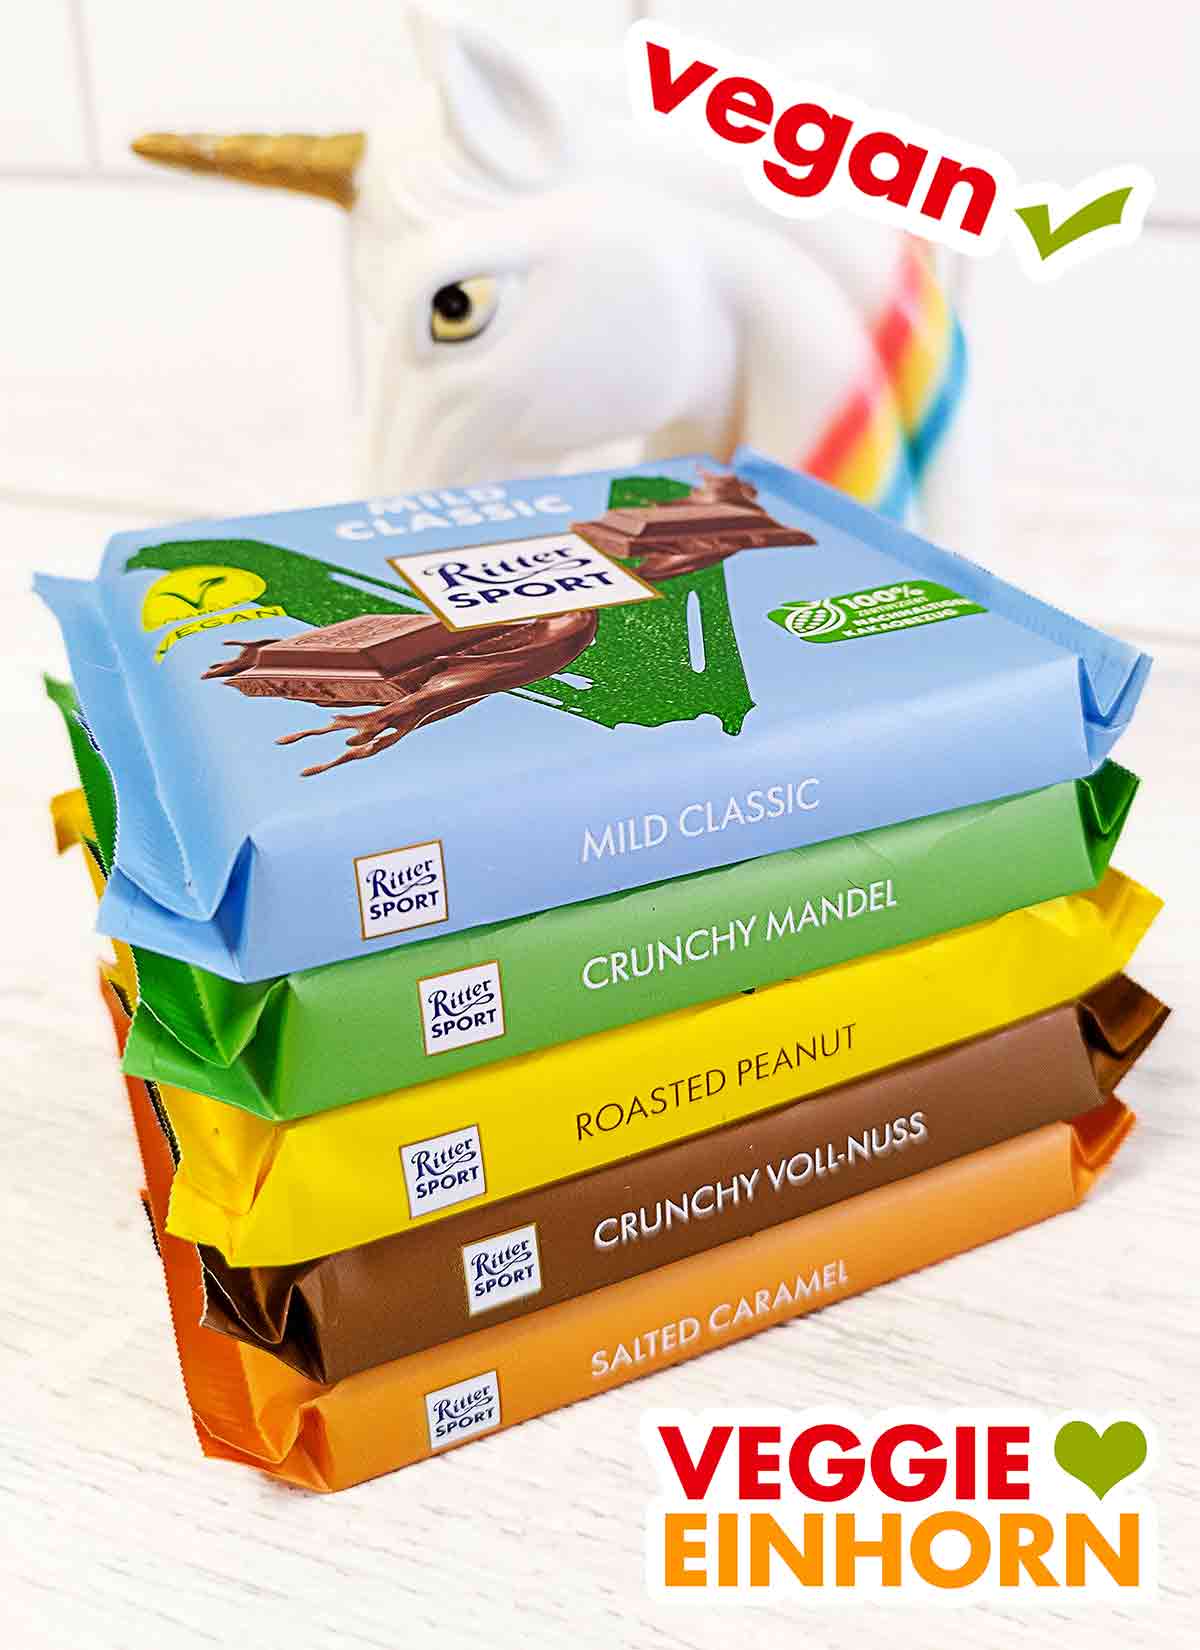 Ein Stapel mit 5 veganen Schokoladensorten von Ritter Sport